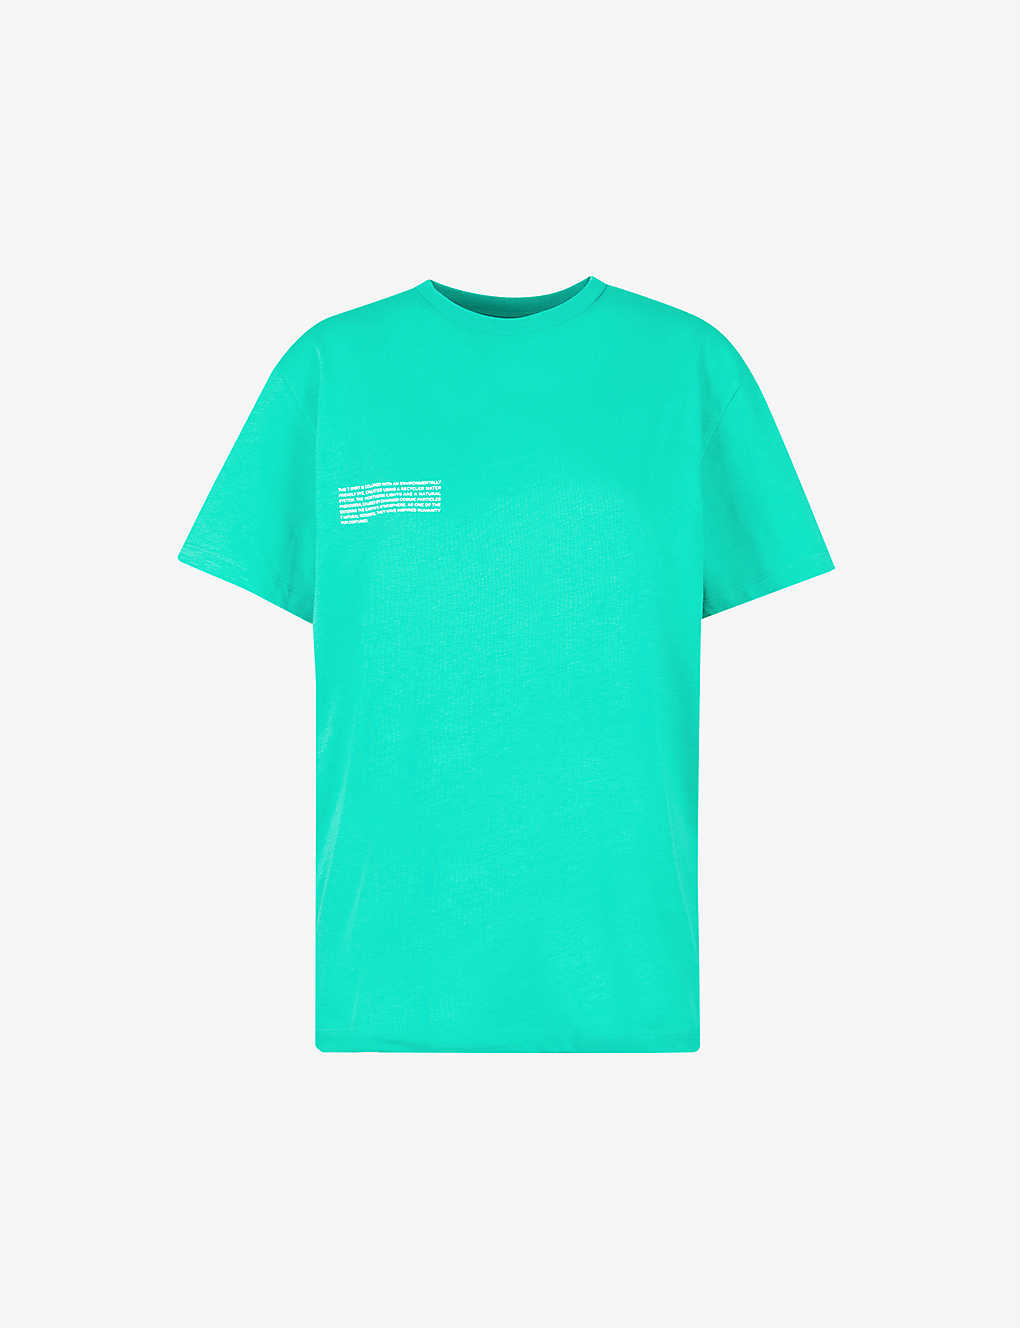 Aurora grün T-Shirt